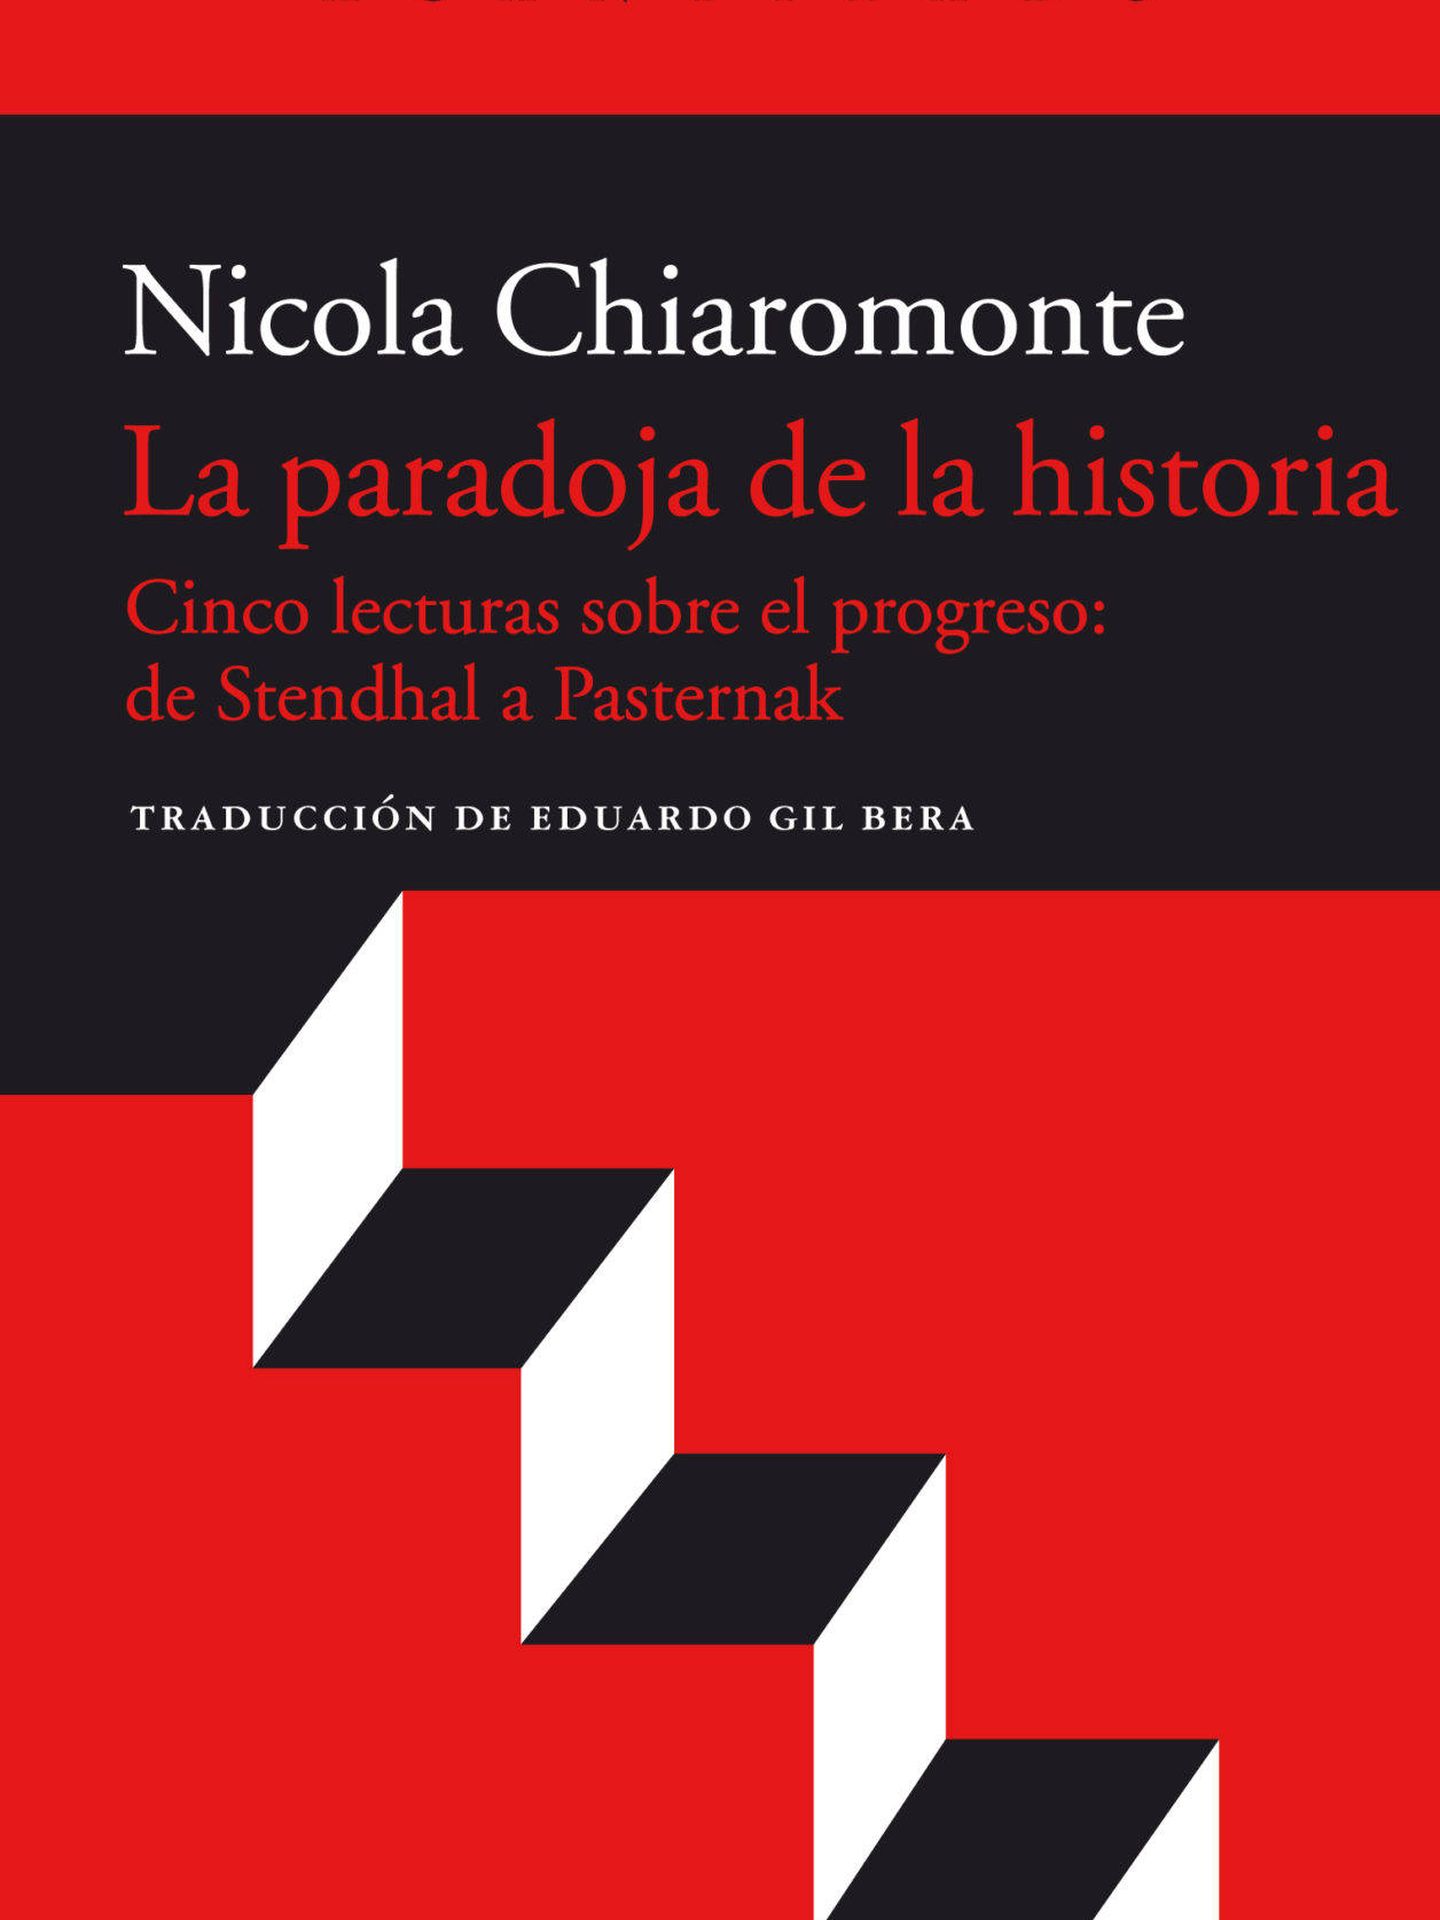 La paradoja de la historia, Nicola Chiaromonte (Acantilado, 2018)